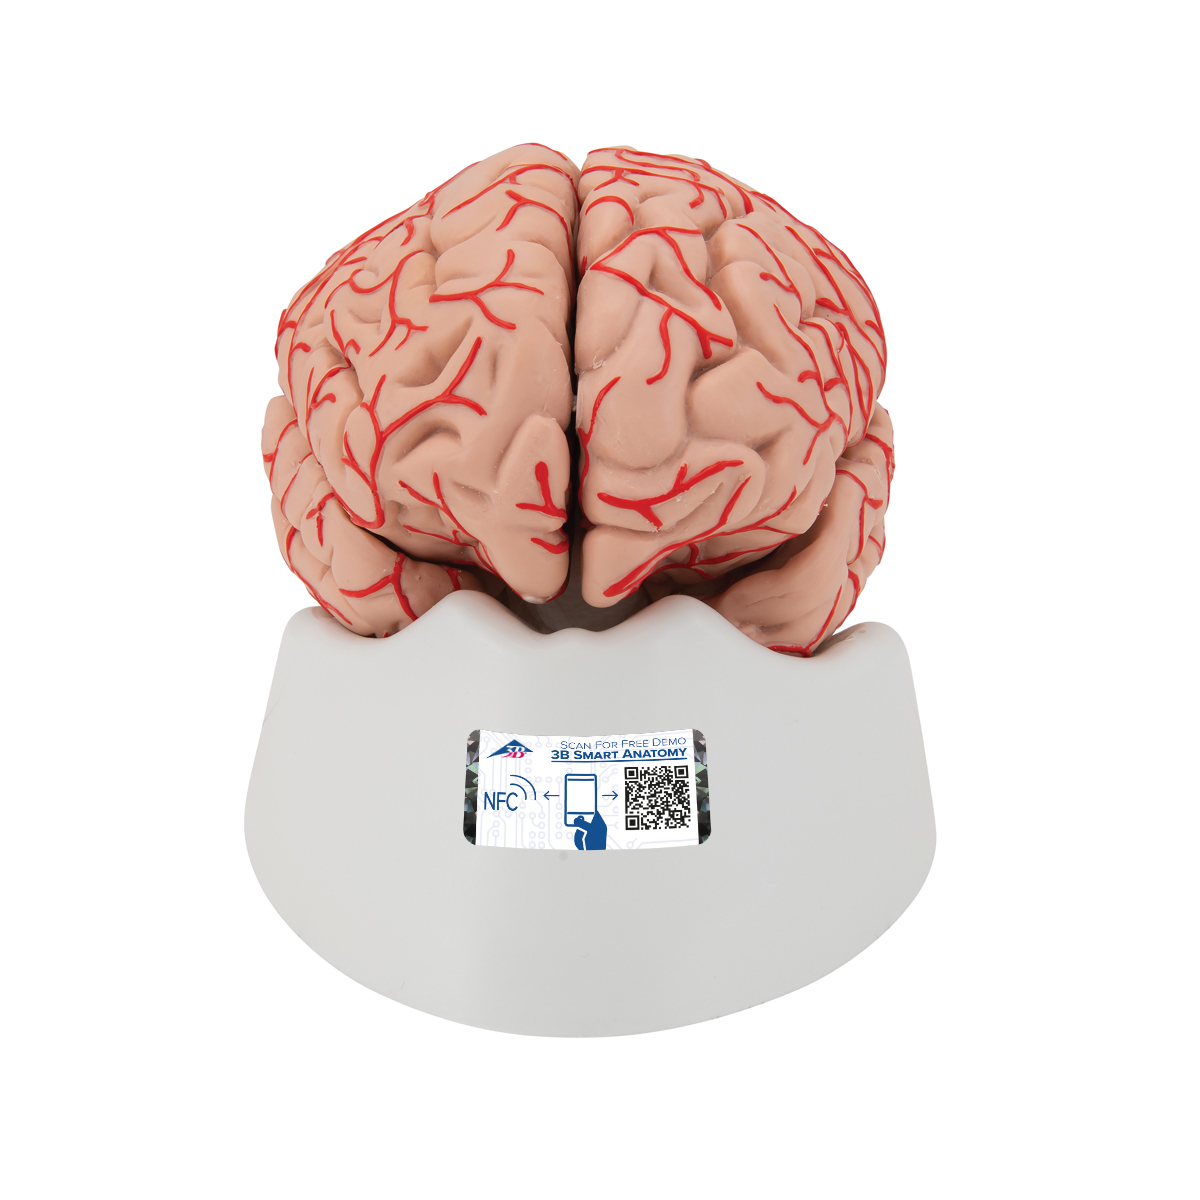 Menschliches Gehirnmodell mit Arterien, 9-teilig - 3B Smart Anatomy, Bestellnummer 1017868, C20, 3B Scientific